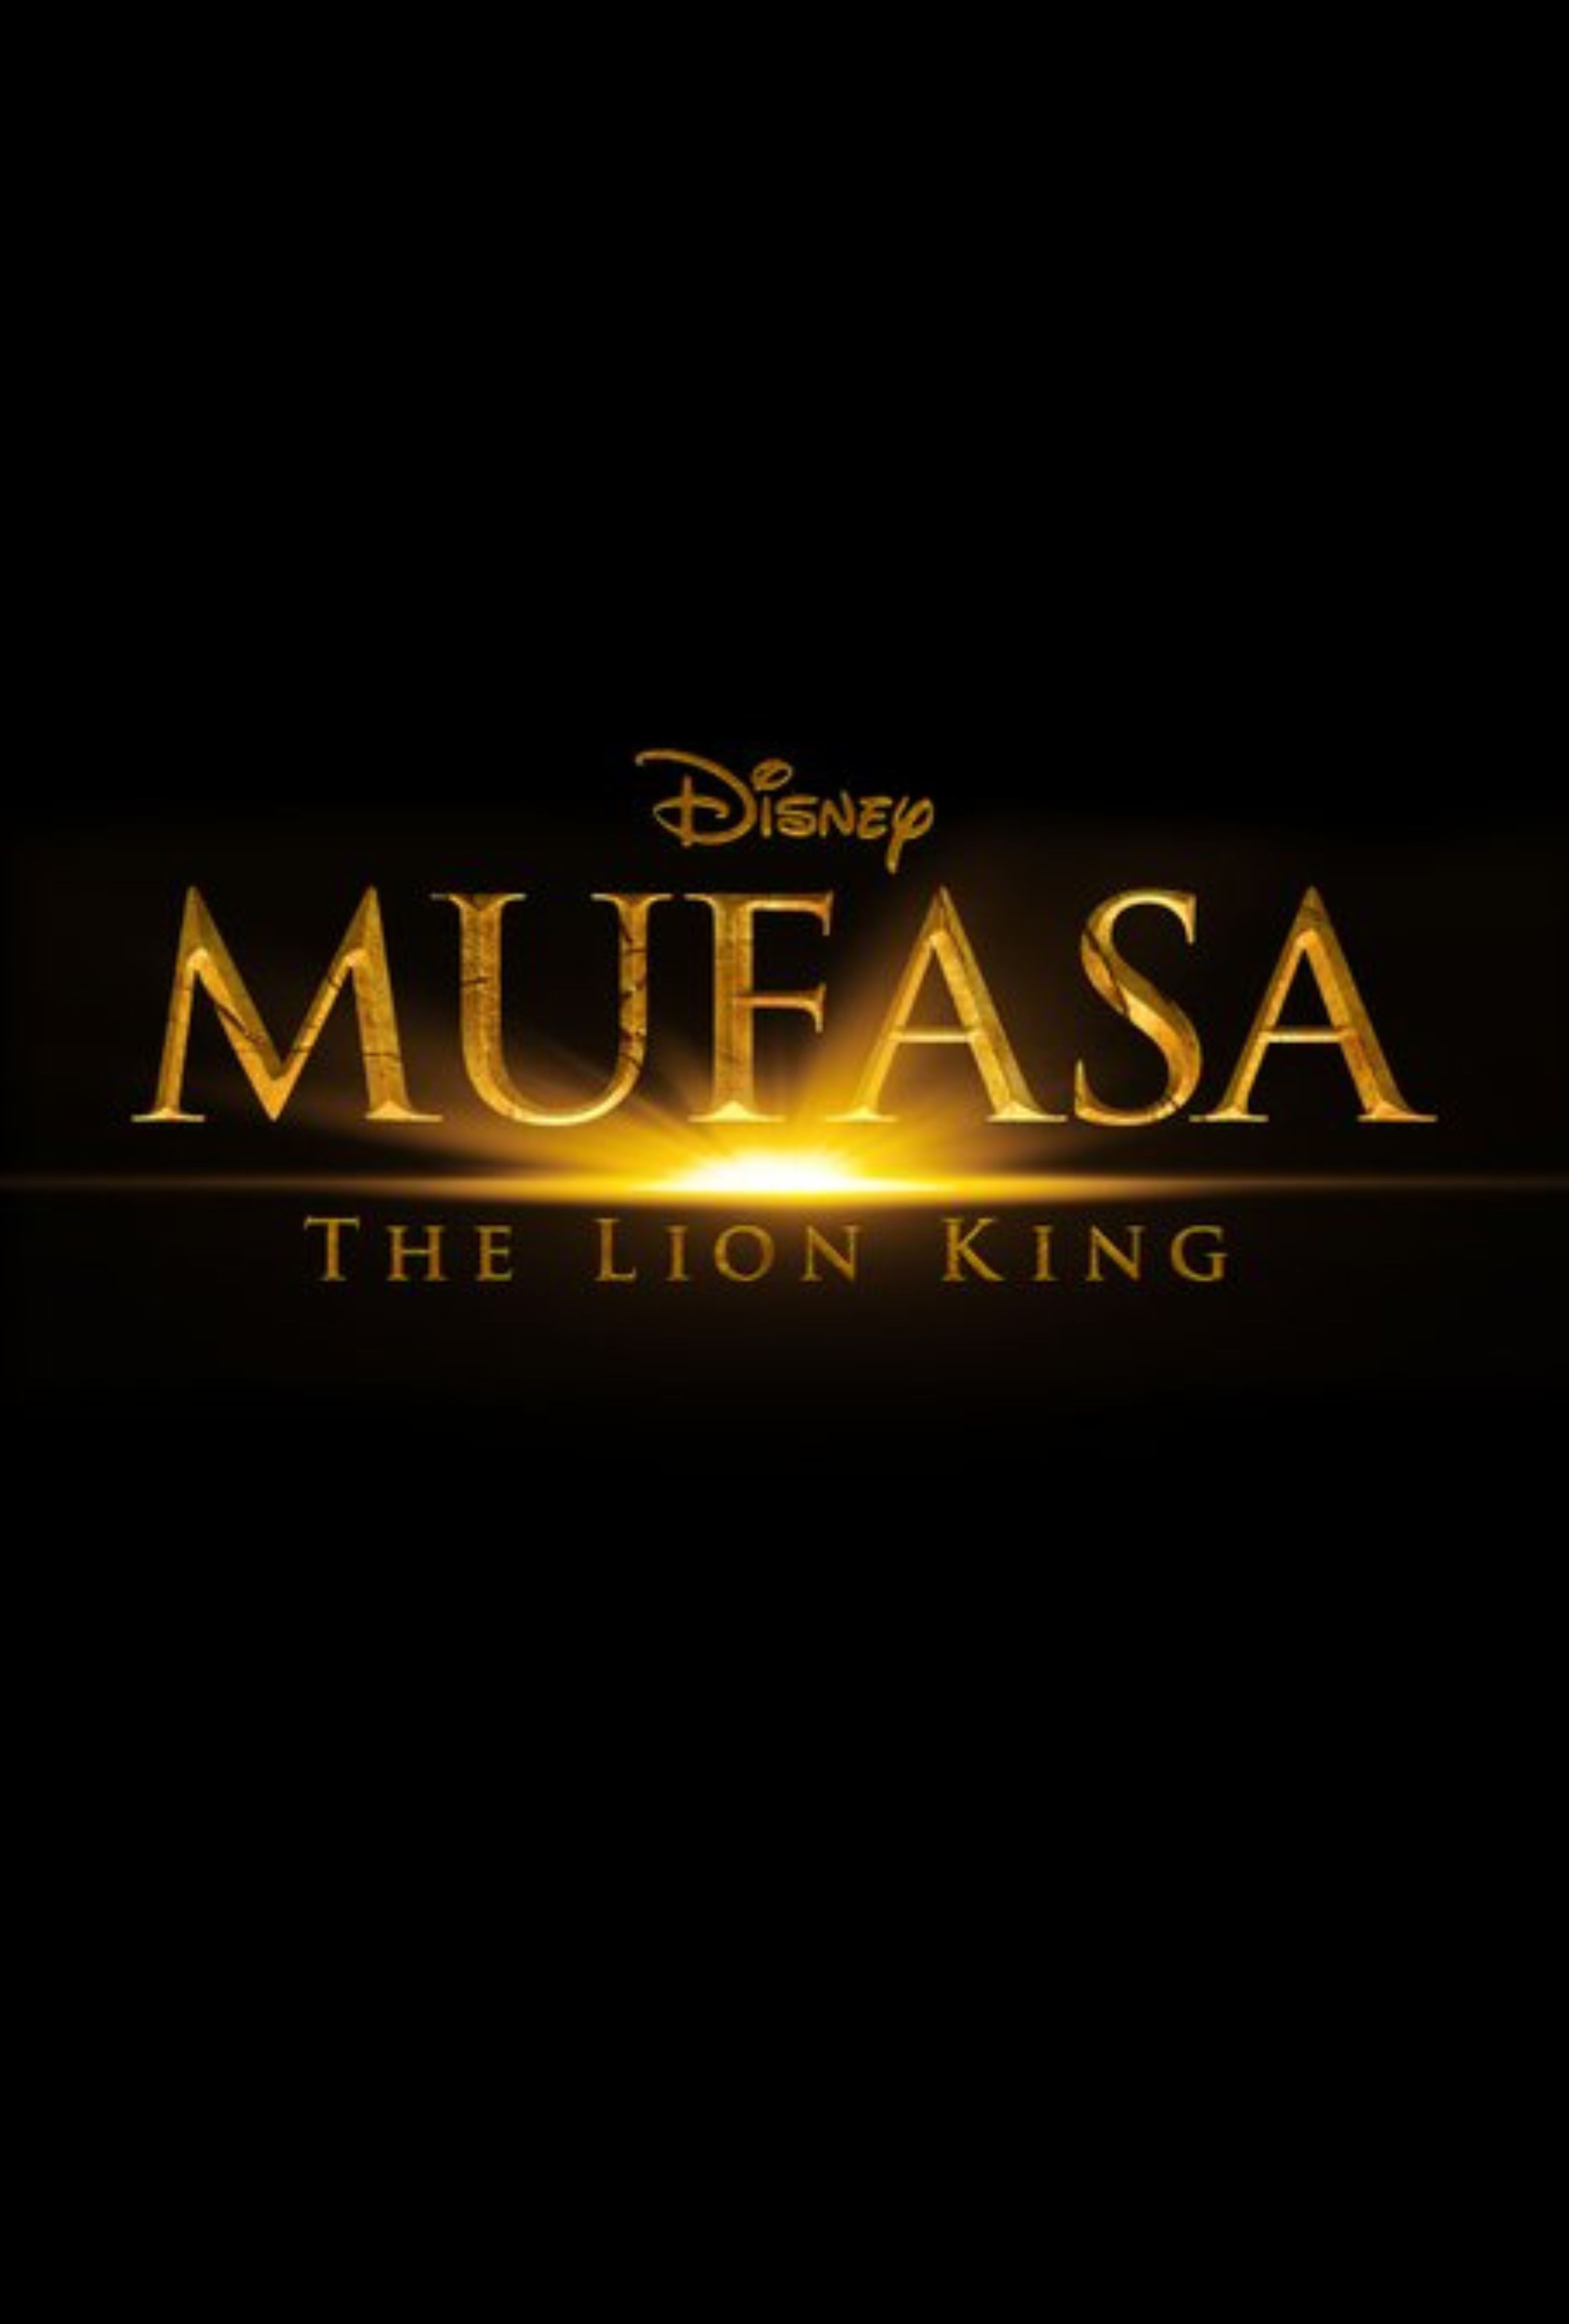 Le préquel du Roi Lion mettra en vedette un Mufasa avant qu'il ne « découvre son rythme »